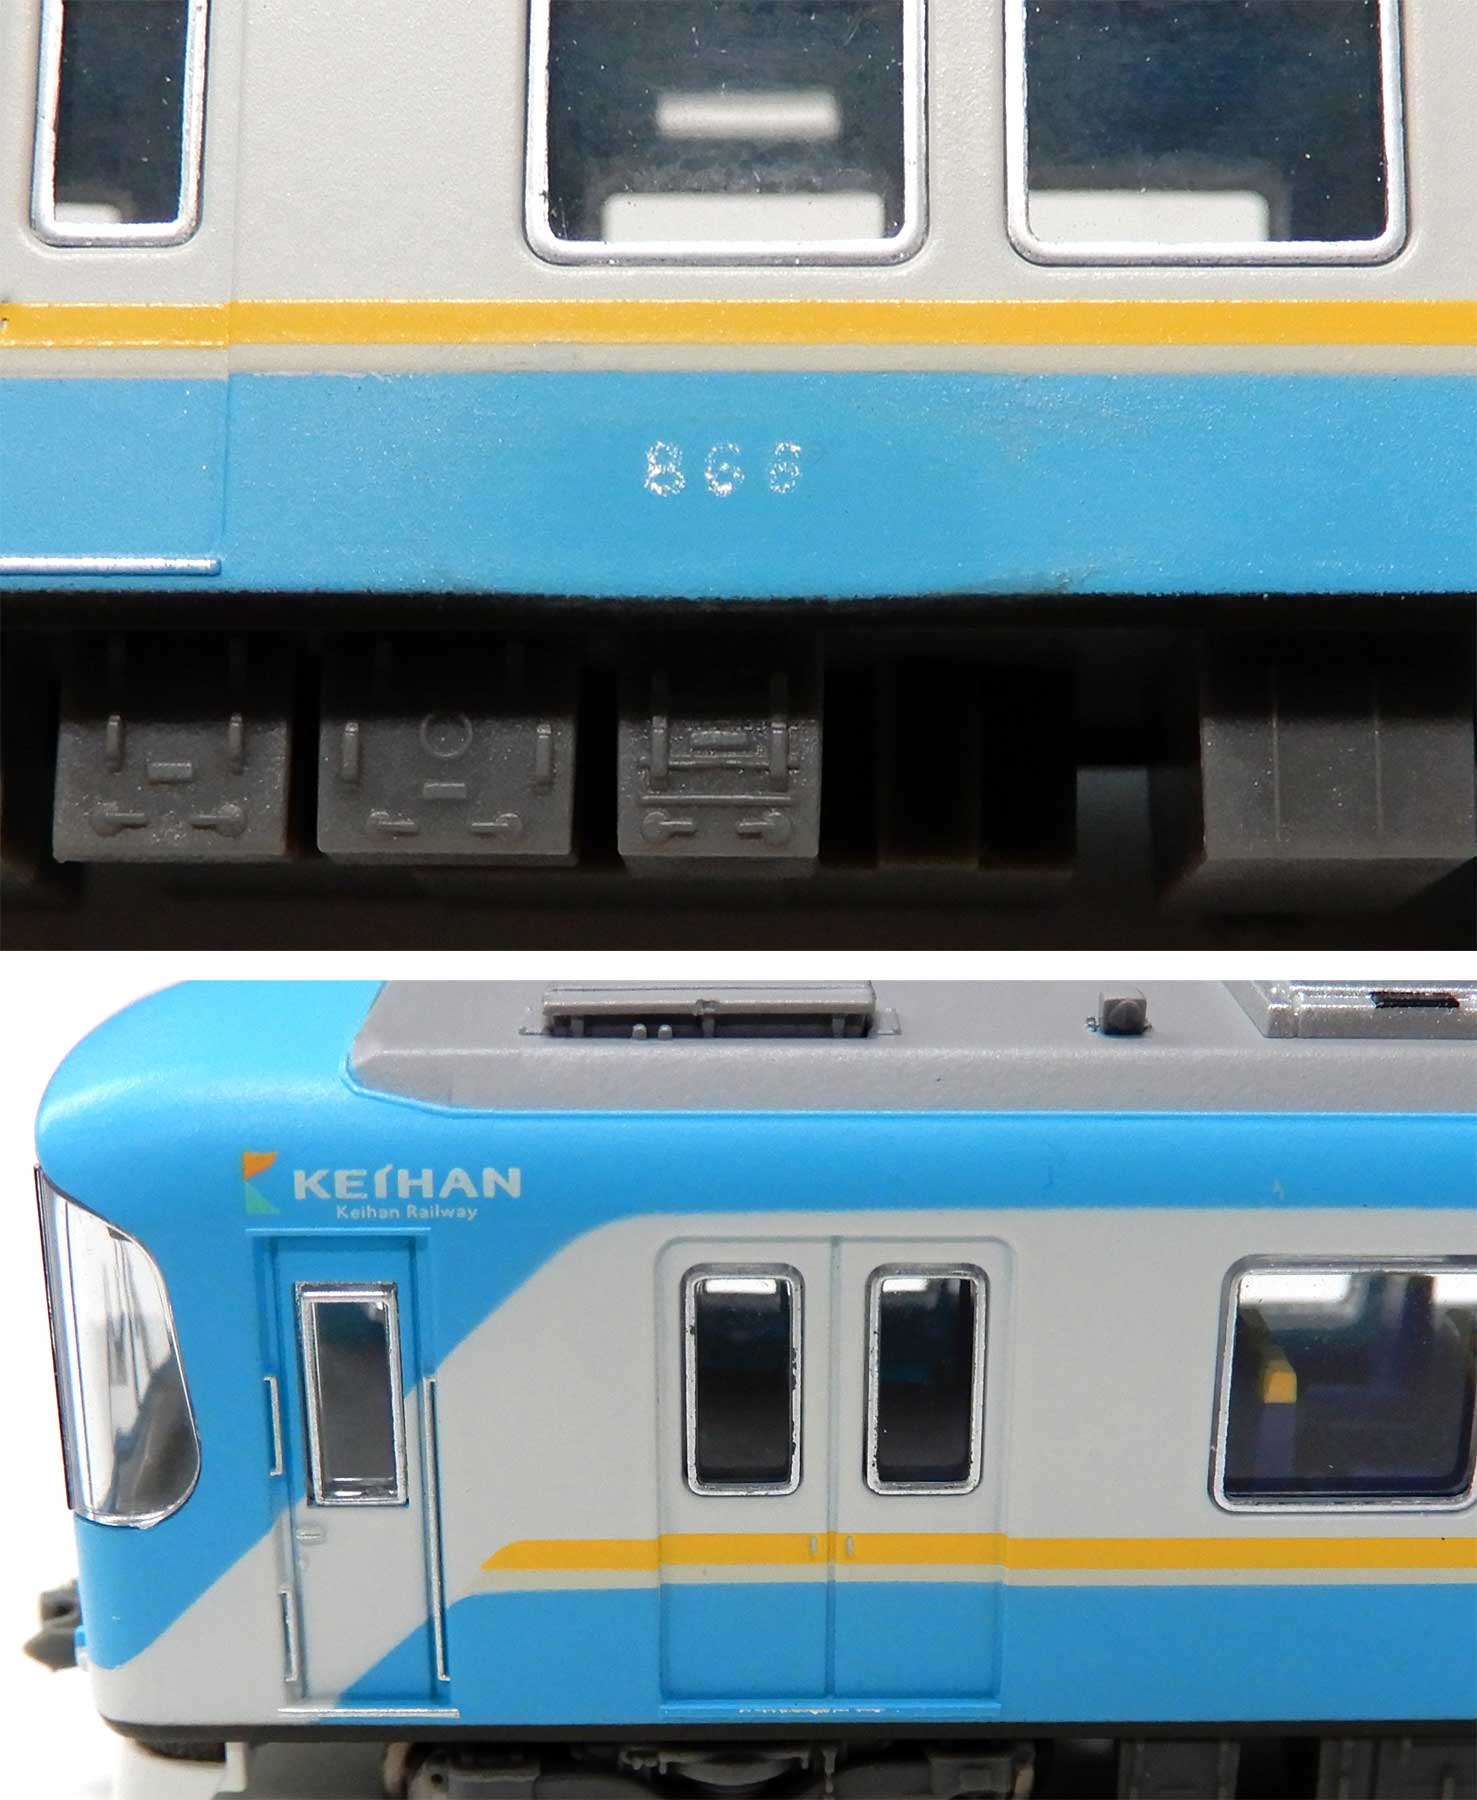 【大人気定番】A8362 京阪 800系 新シンボルマーク 4両セット(動力付き) Nゲージ 鉄道模型 MICRO ACE(マイクロエース) 私鉄車輌